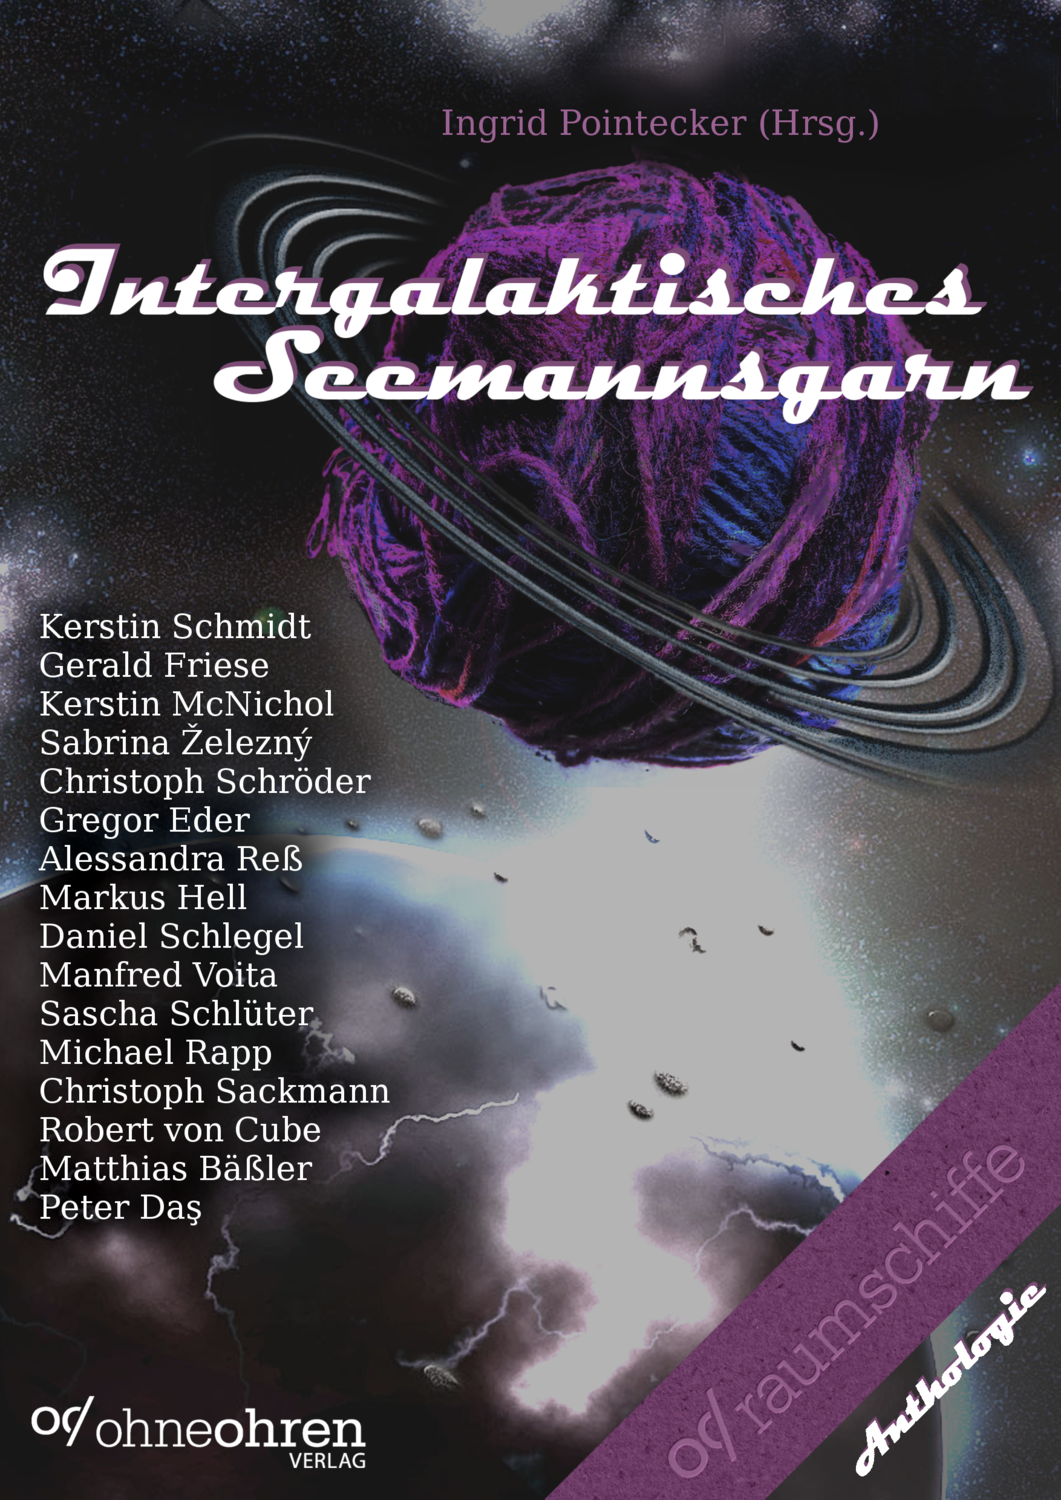 Ingrid Pointecker (Hrsg.): Intergalaktisches Seemannsgarn